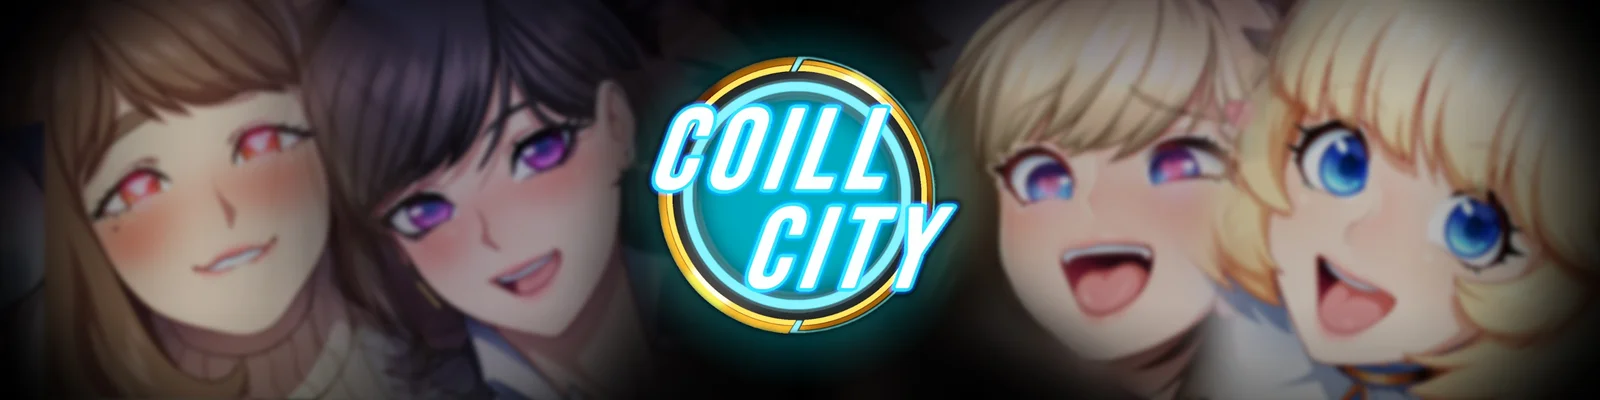 Coill City v.0.1.023